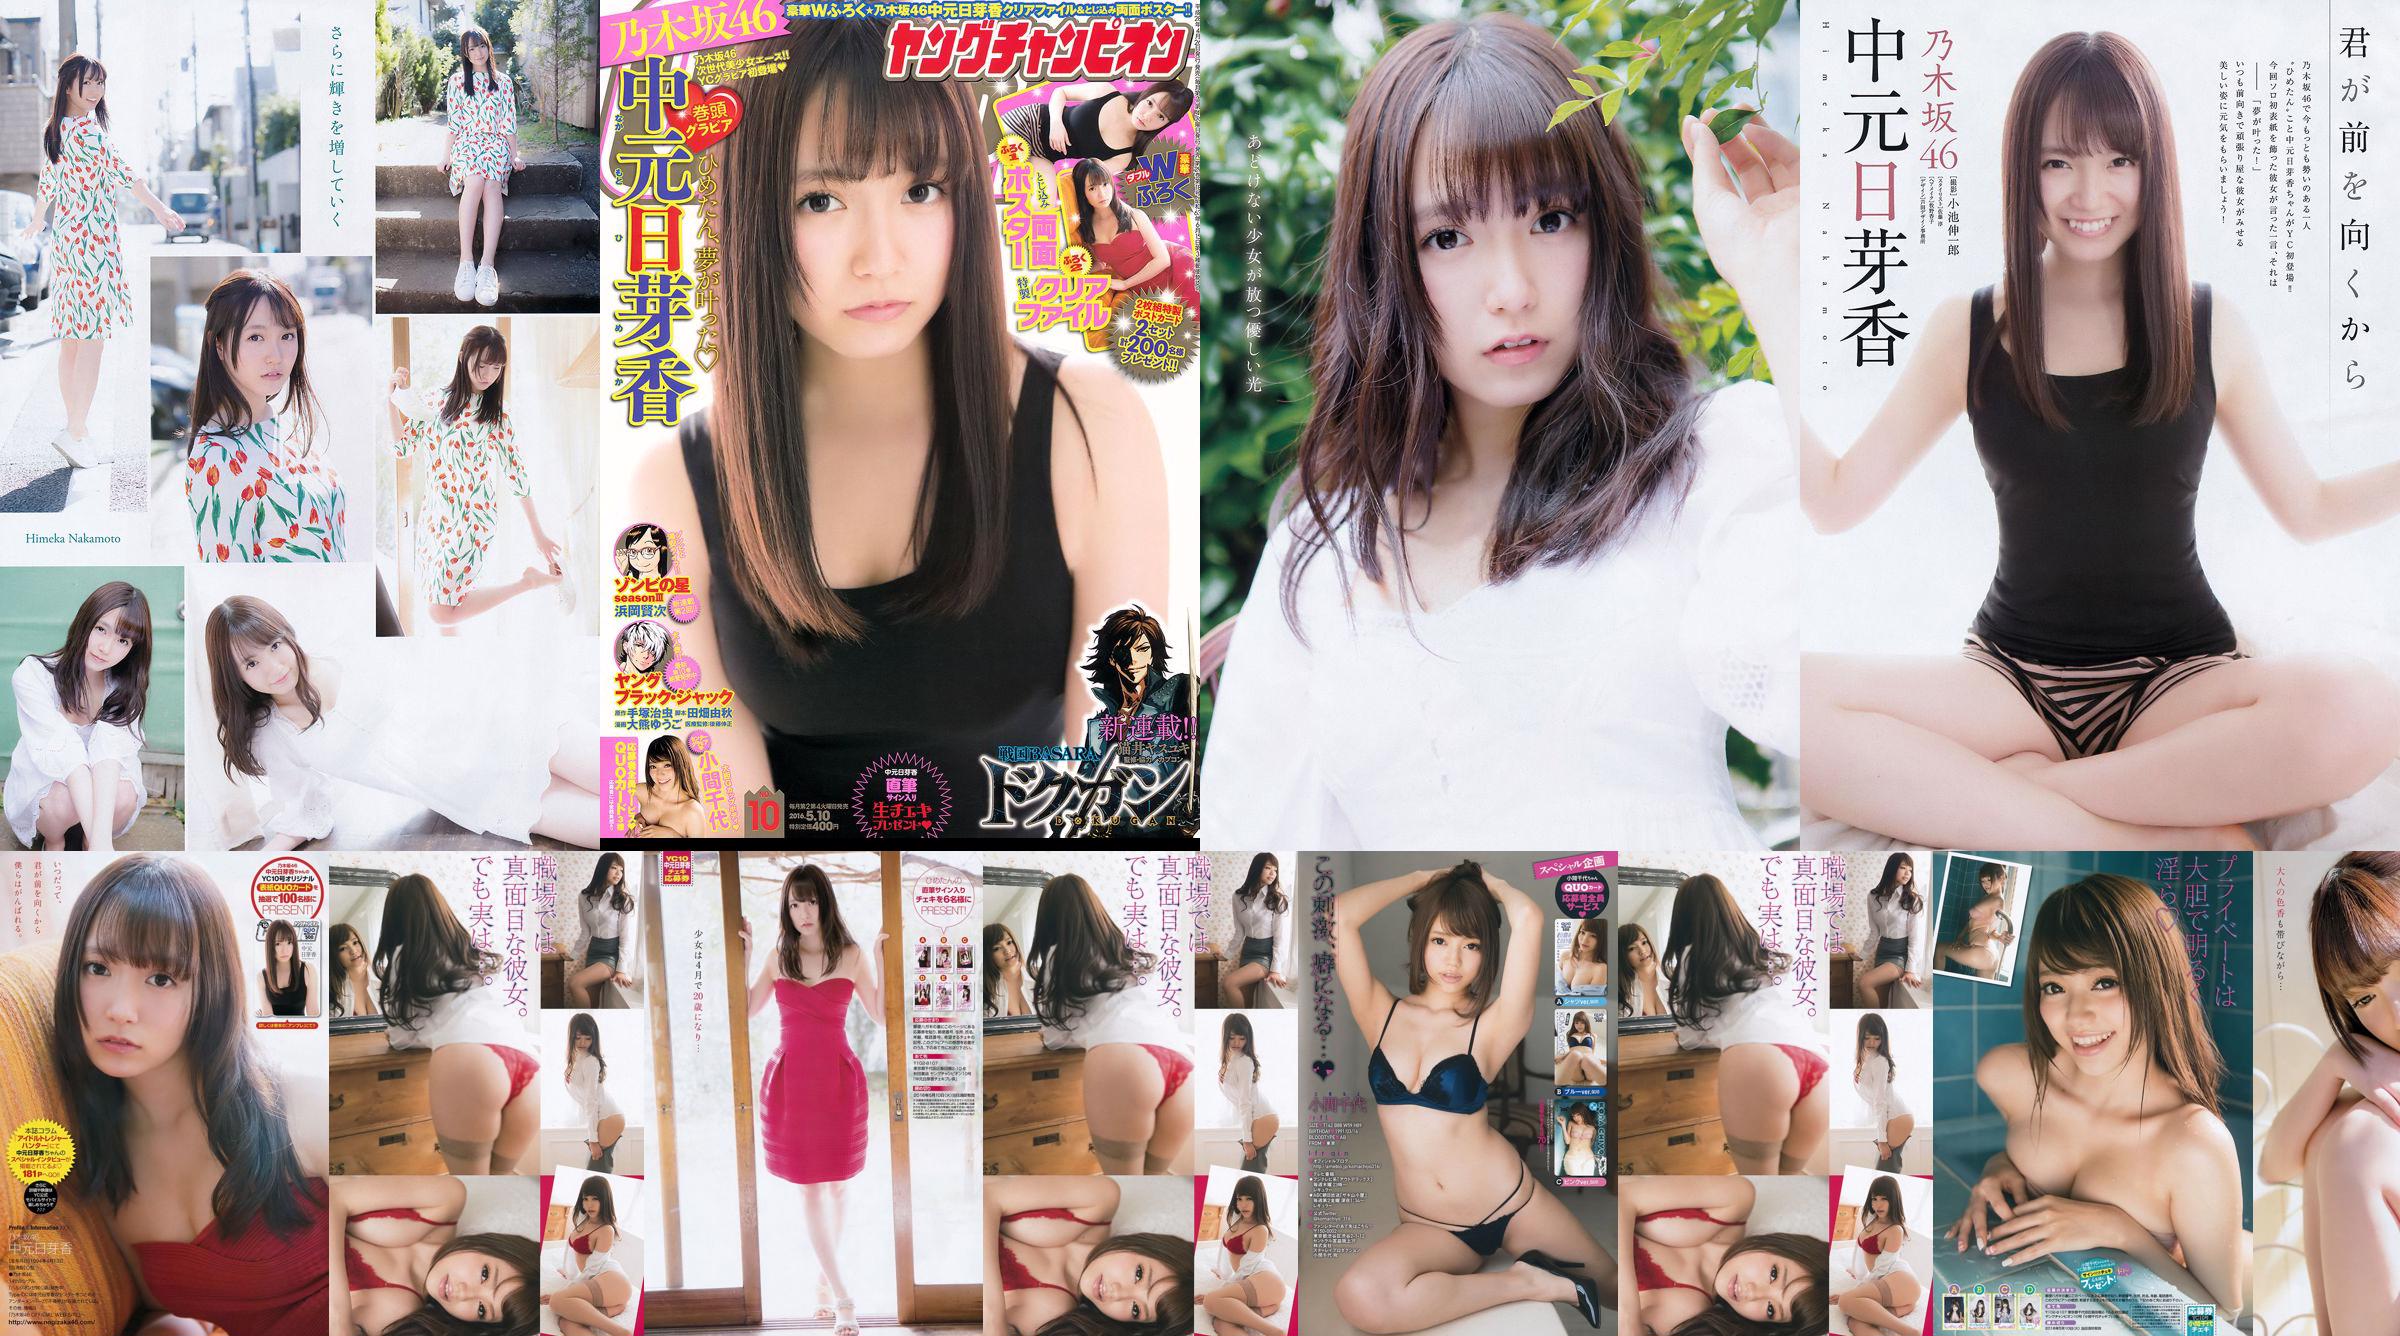 [Joven Campeona] Nakamoto Nichiko Koma Chiyo 2016 No.10 Photo Magazine No.4f0223 Página 3